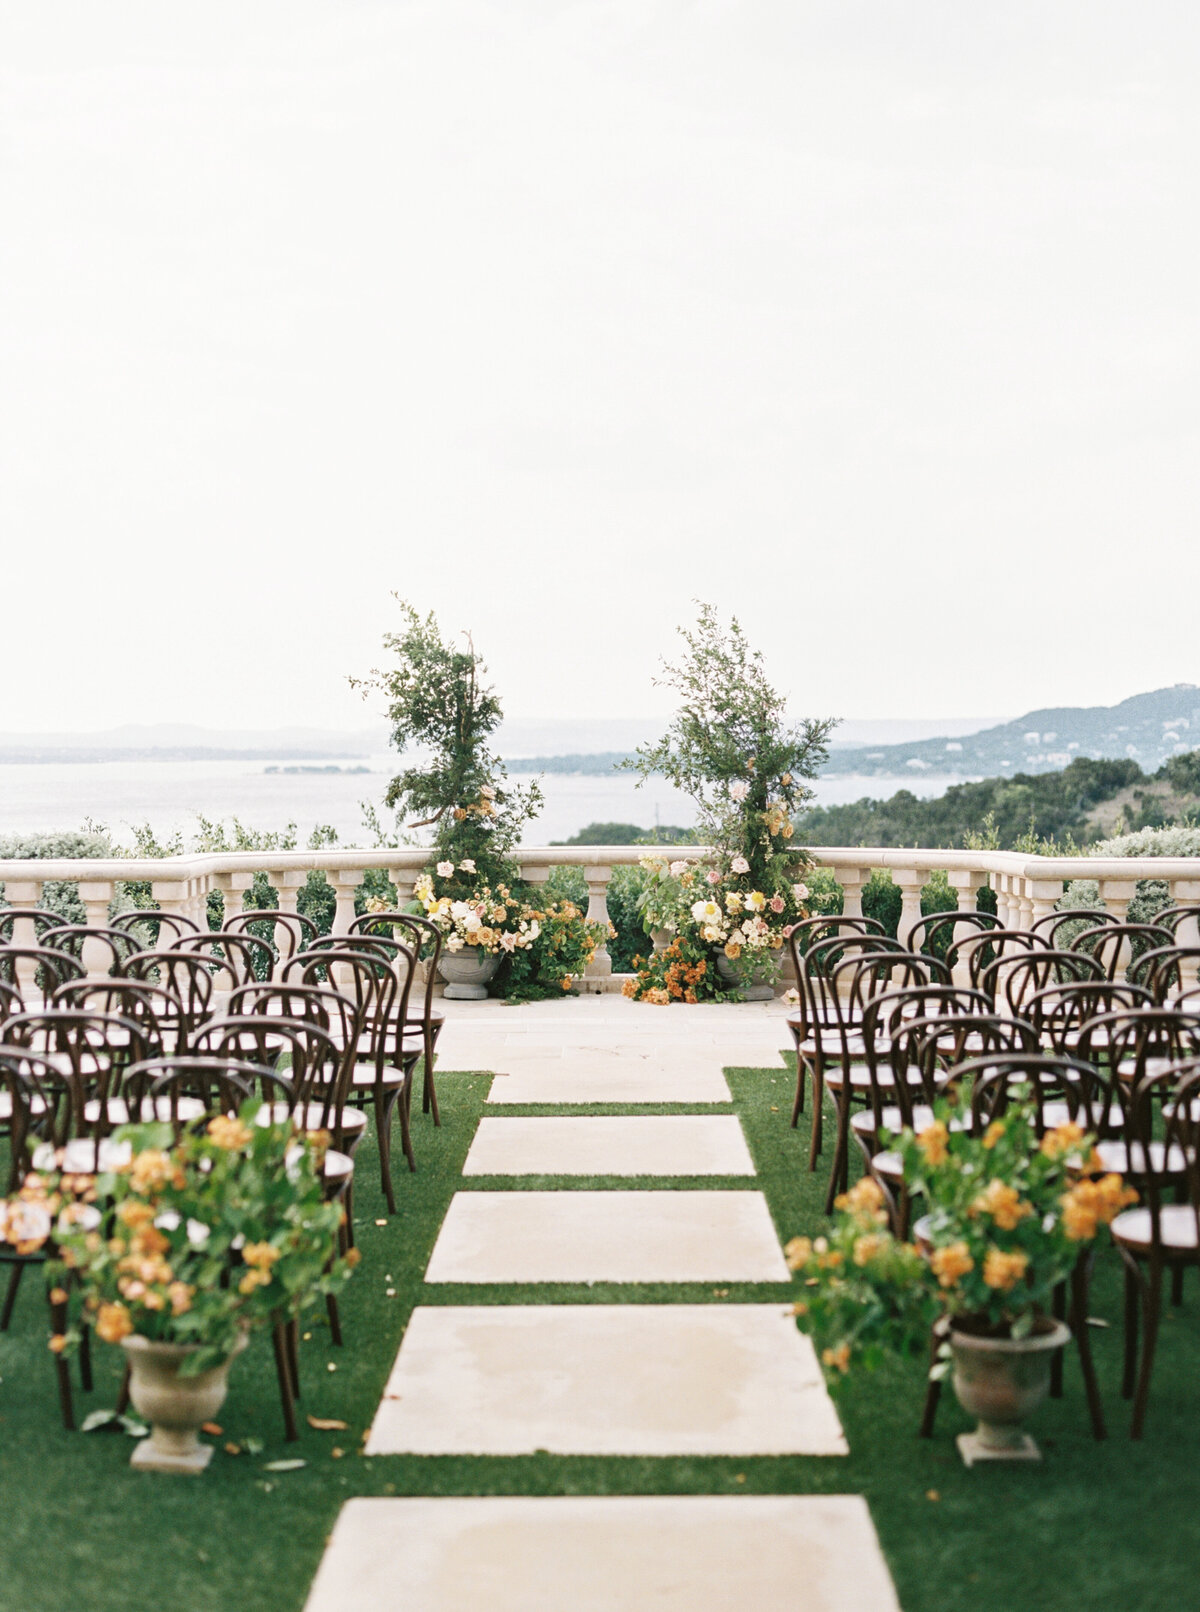 max-owens-design-italian-villa-wedding-12-outdoor-ceremony